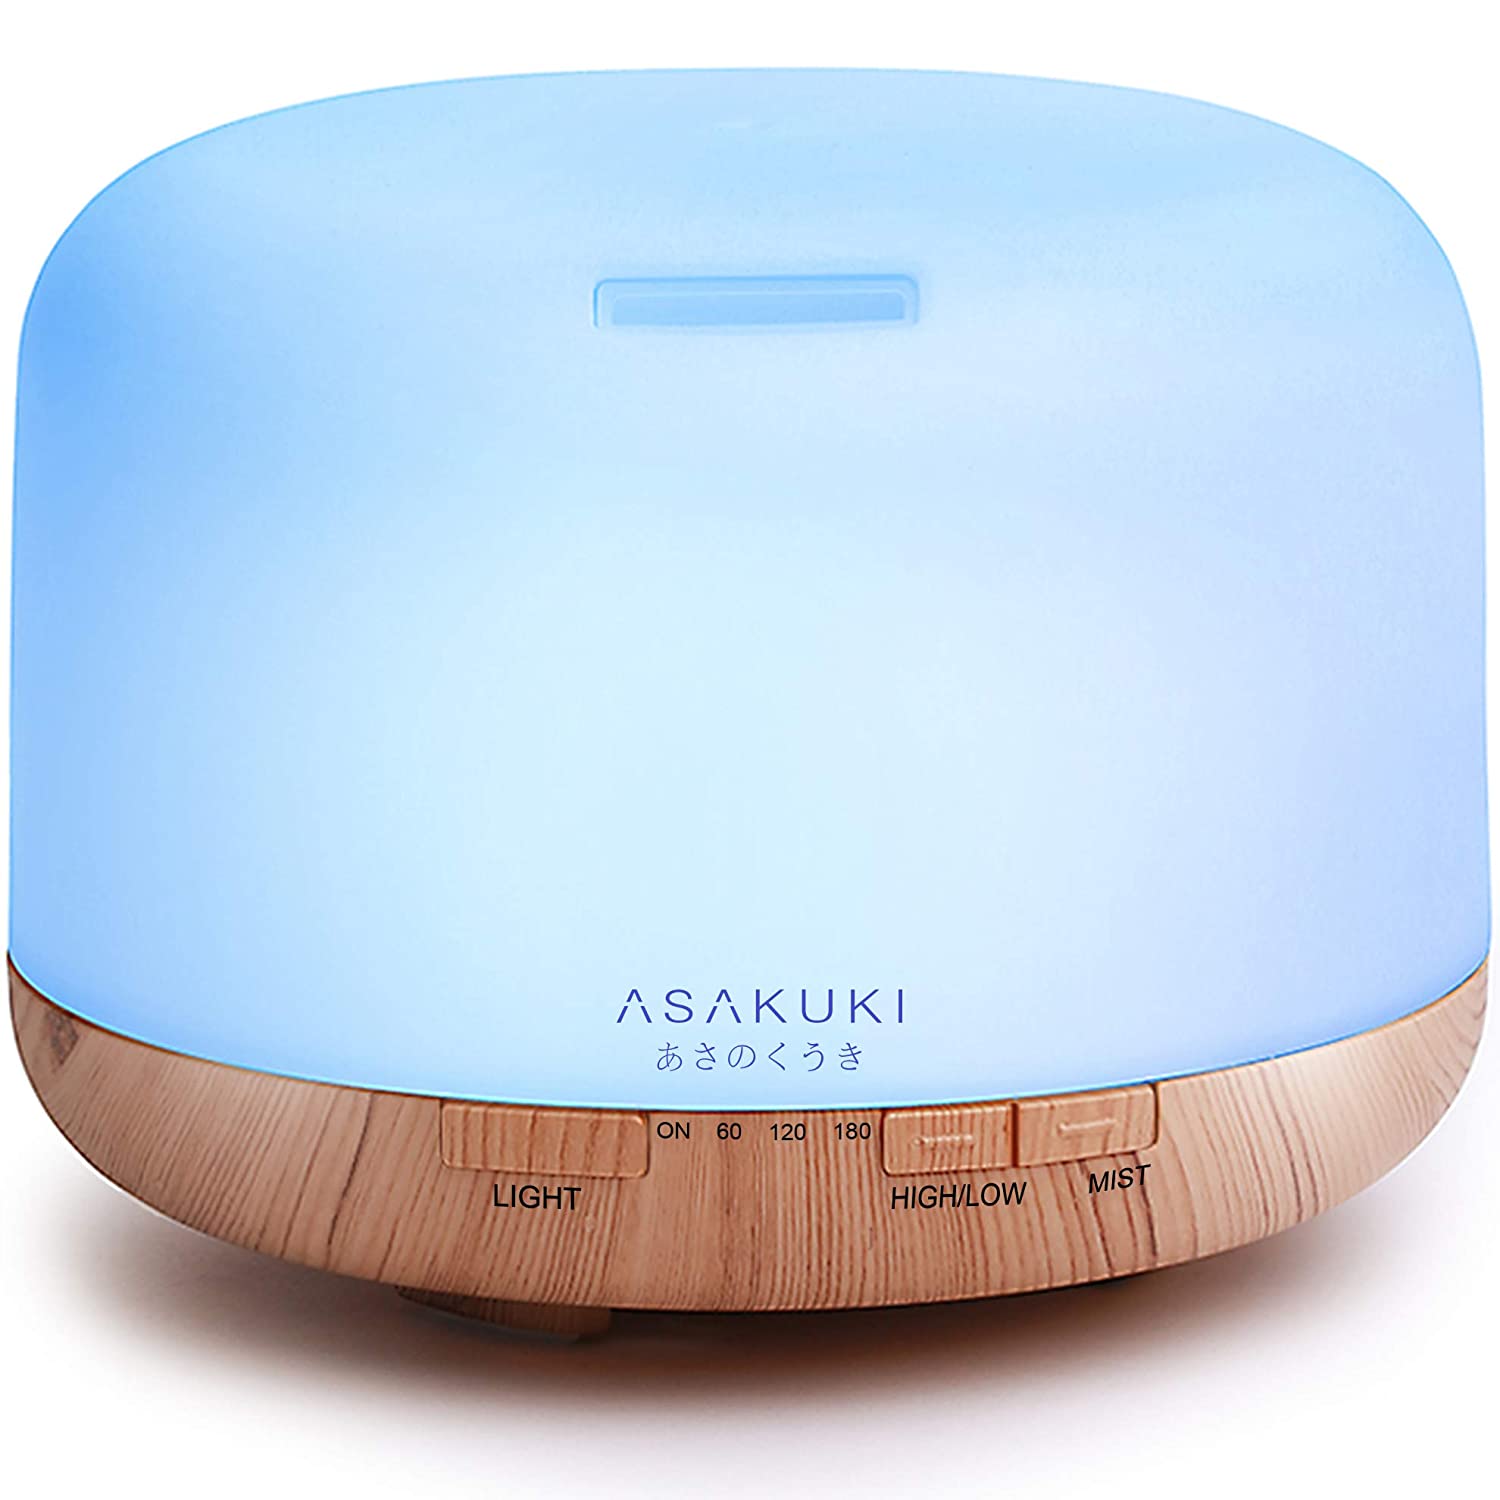 ASAKUKI 500ml Premium, Essential Oil Diffuser